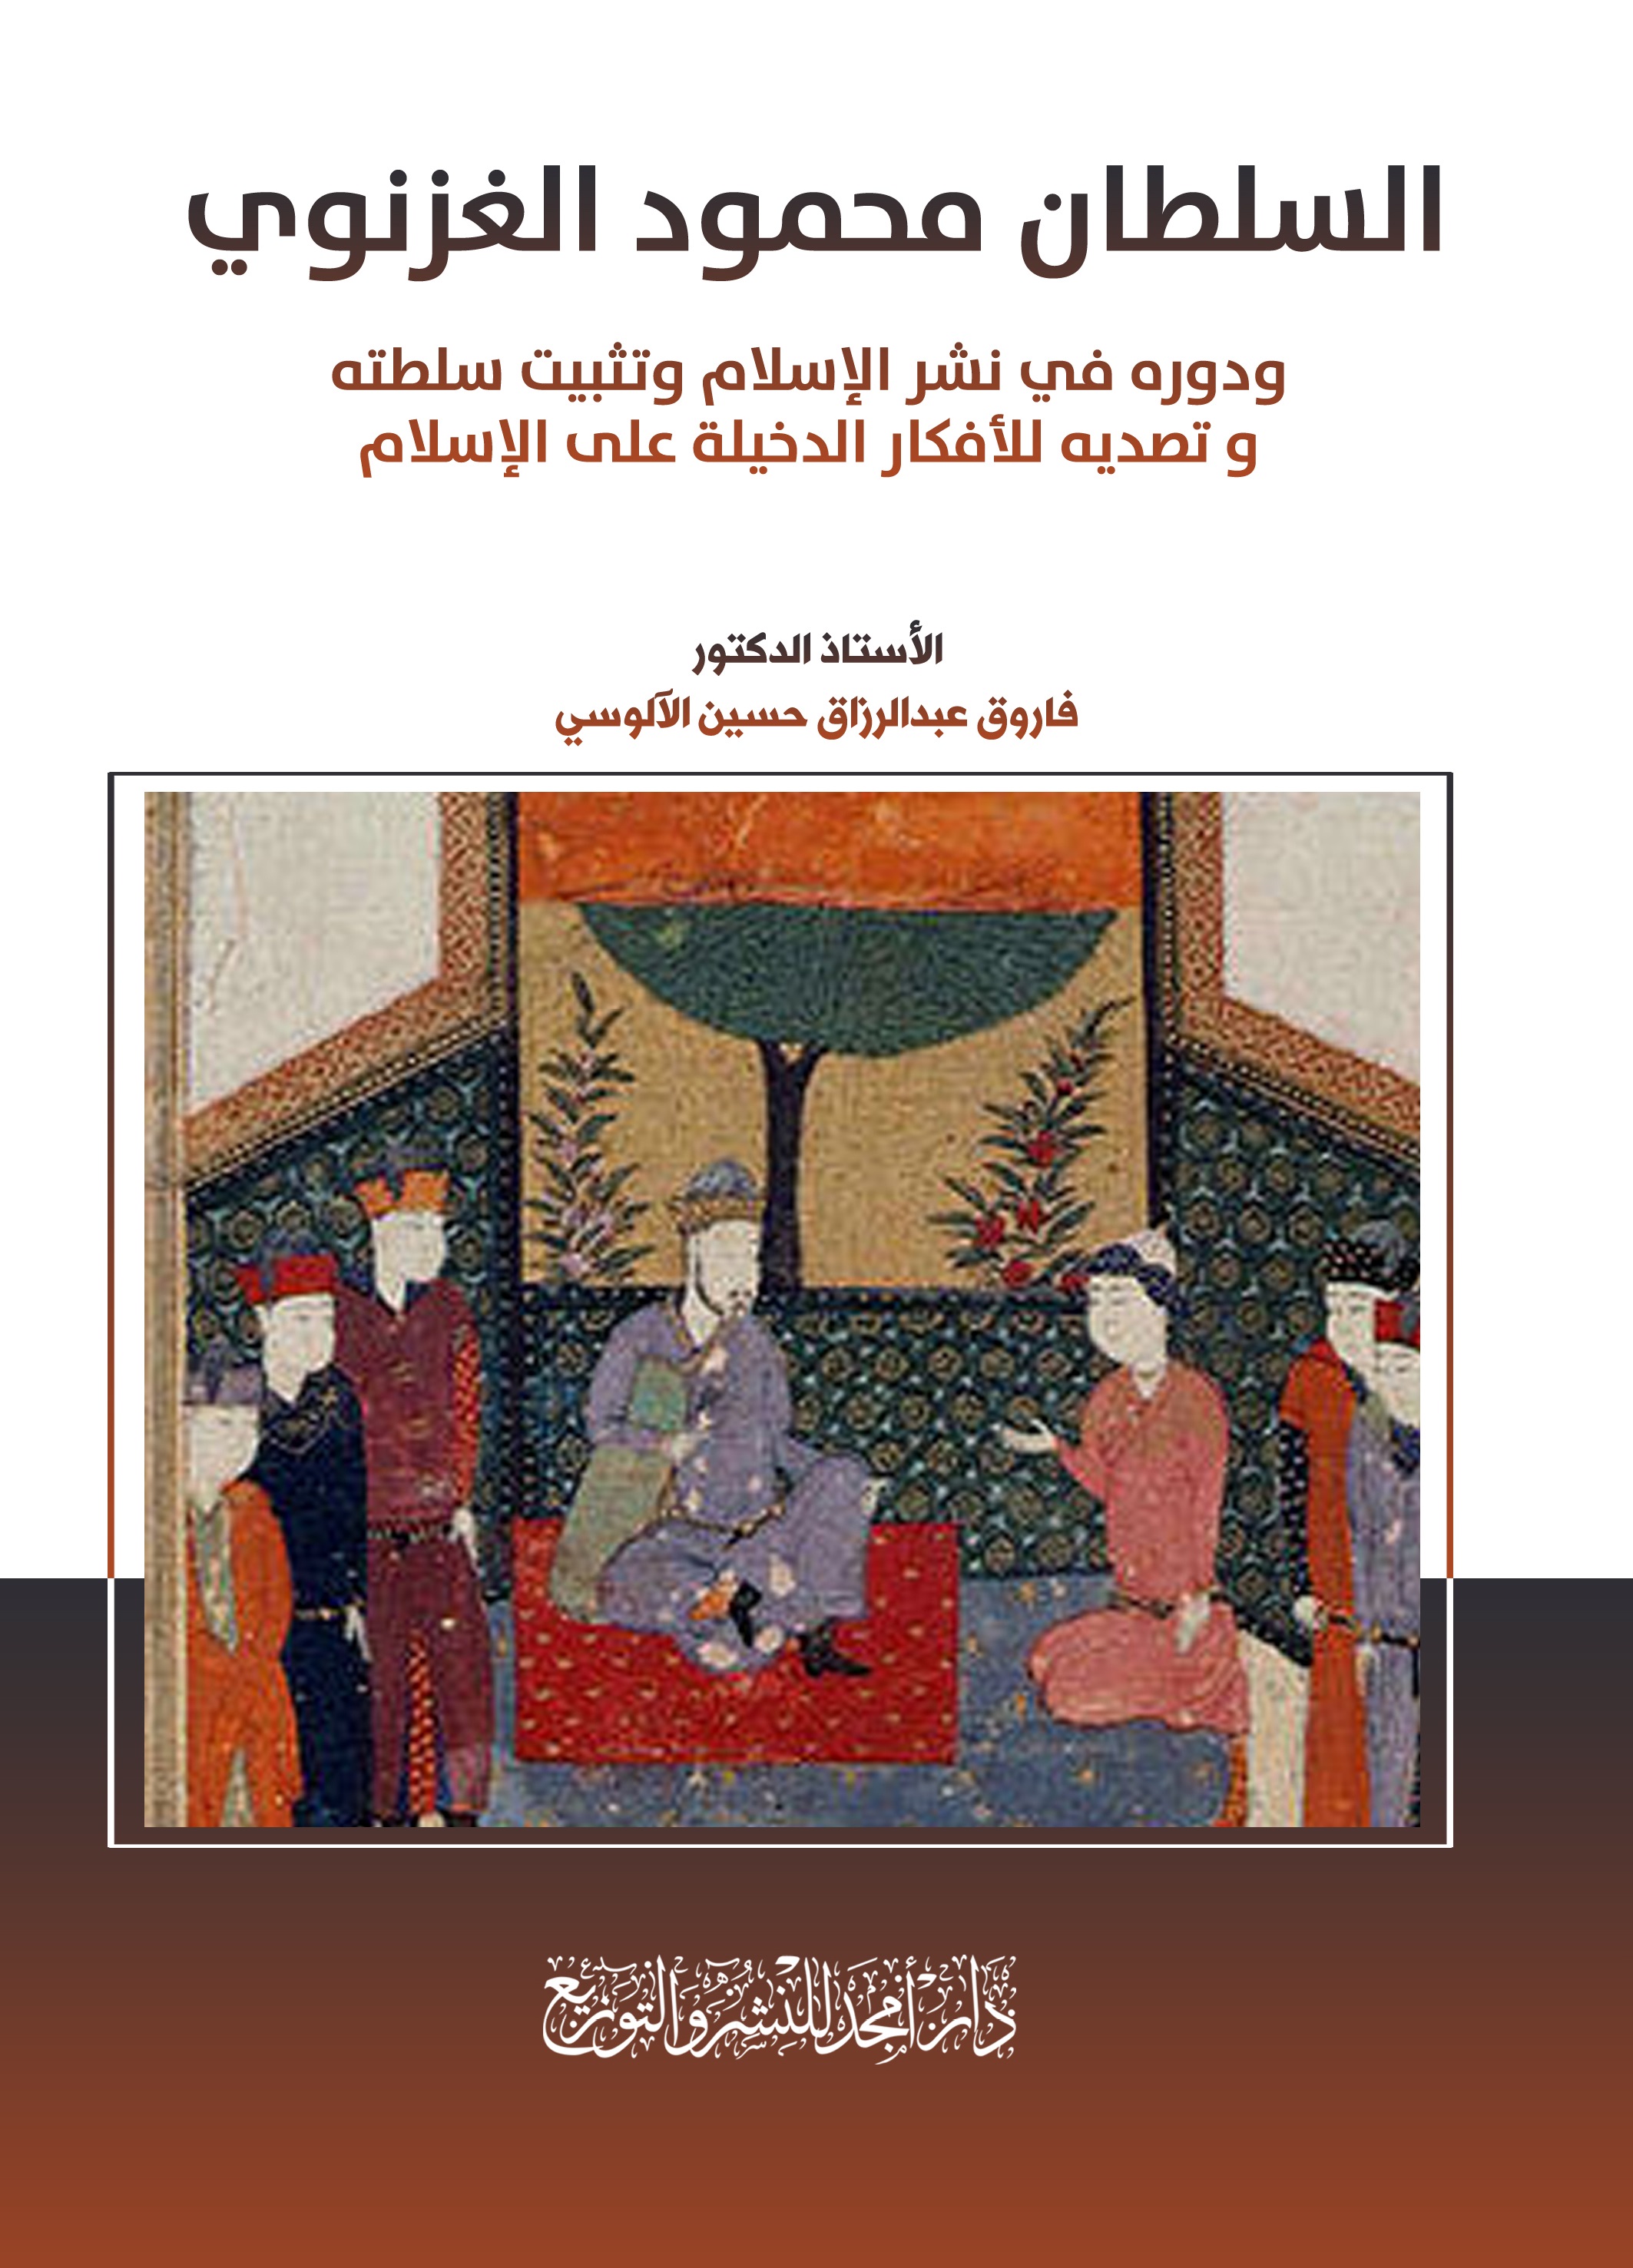 السلطان محمود الغزنوي ودوره في نشر الإسلام وتثبيت سلطته وتصديه للأفكار الدخيلة على الإسلام